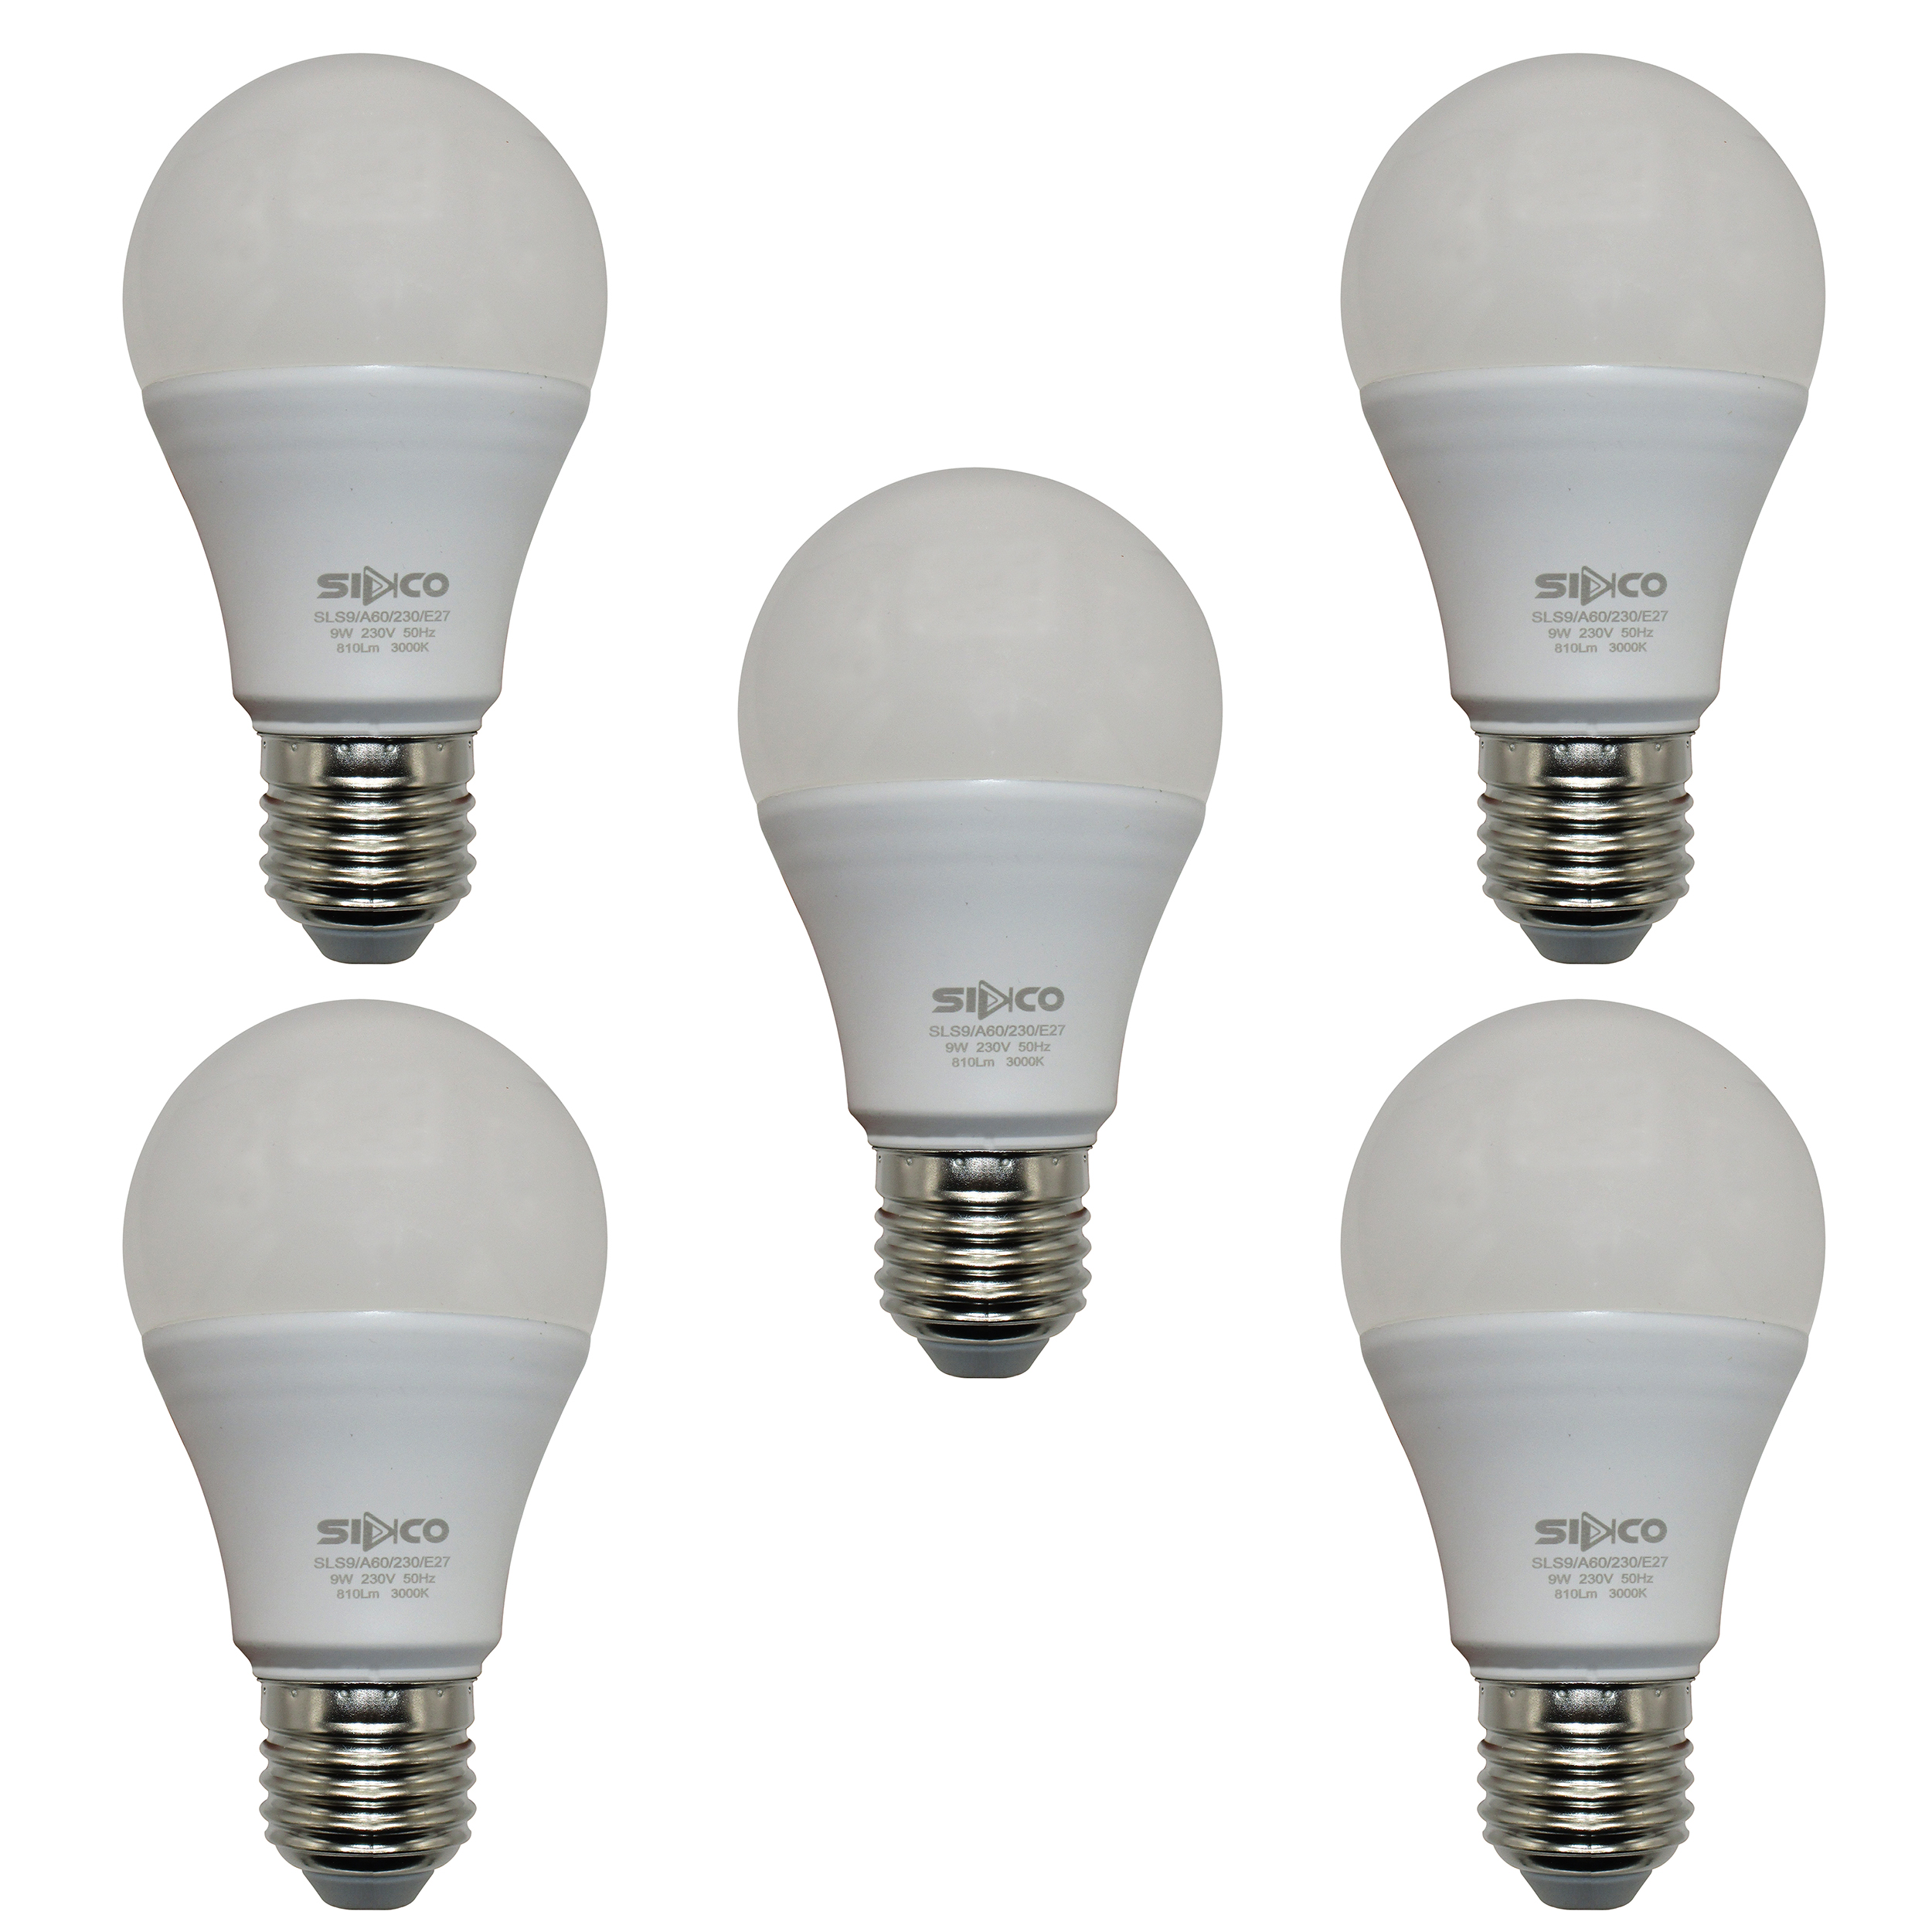 لامپ کم مصرف 9 وات سیدکو مدل Hob1 پایه E27 مجموعه 5 عددی